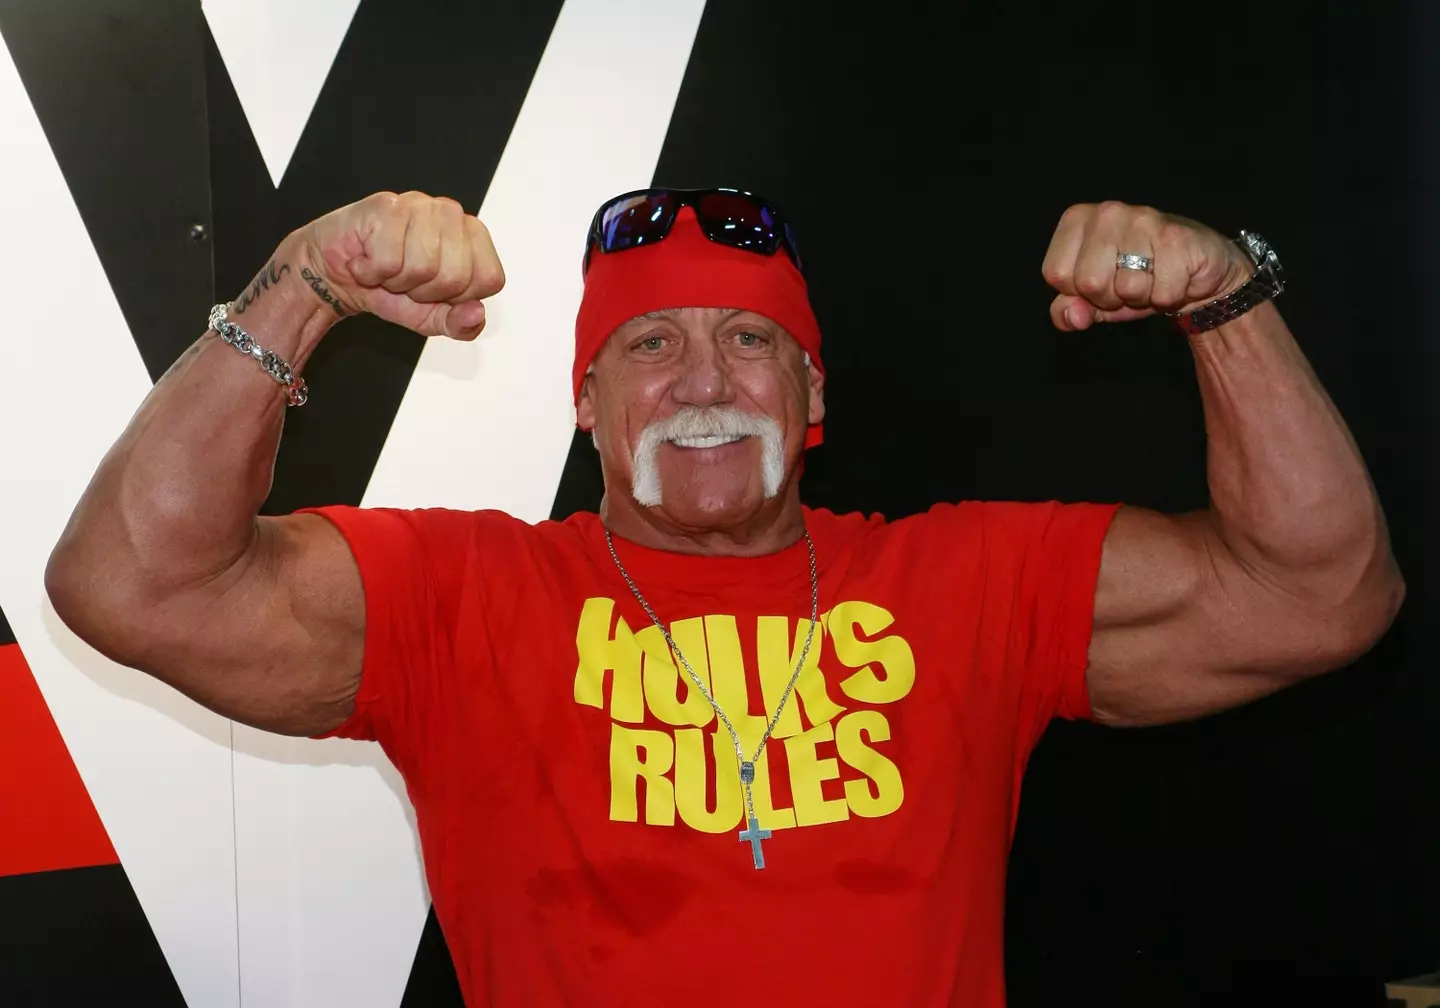 Hulk Hogan rose to fame through professional wrestling.